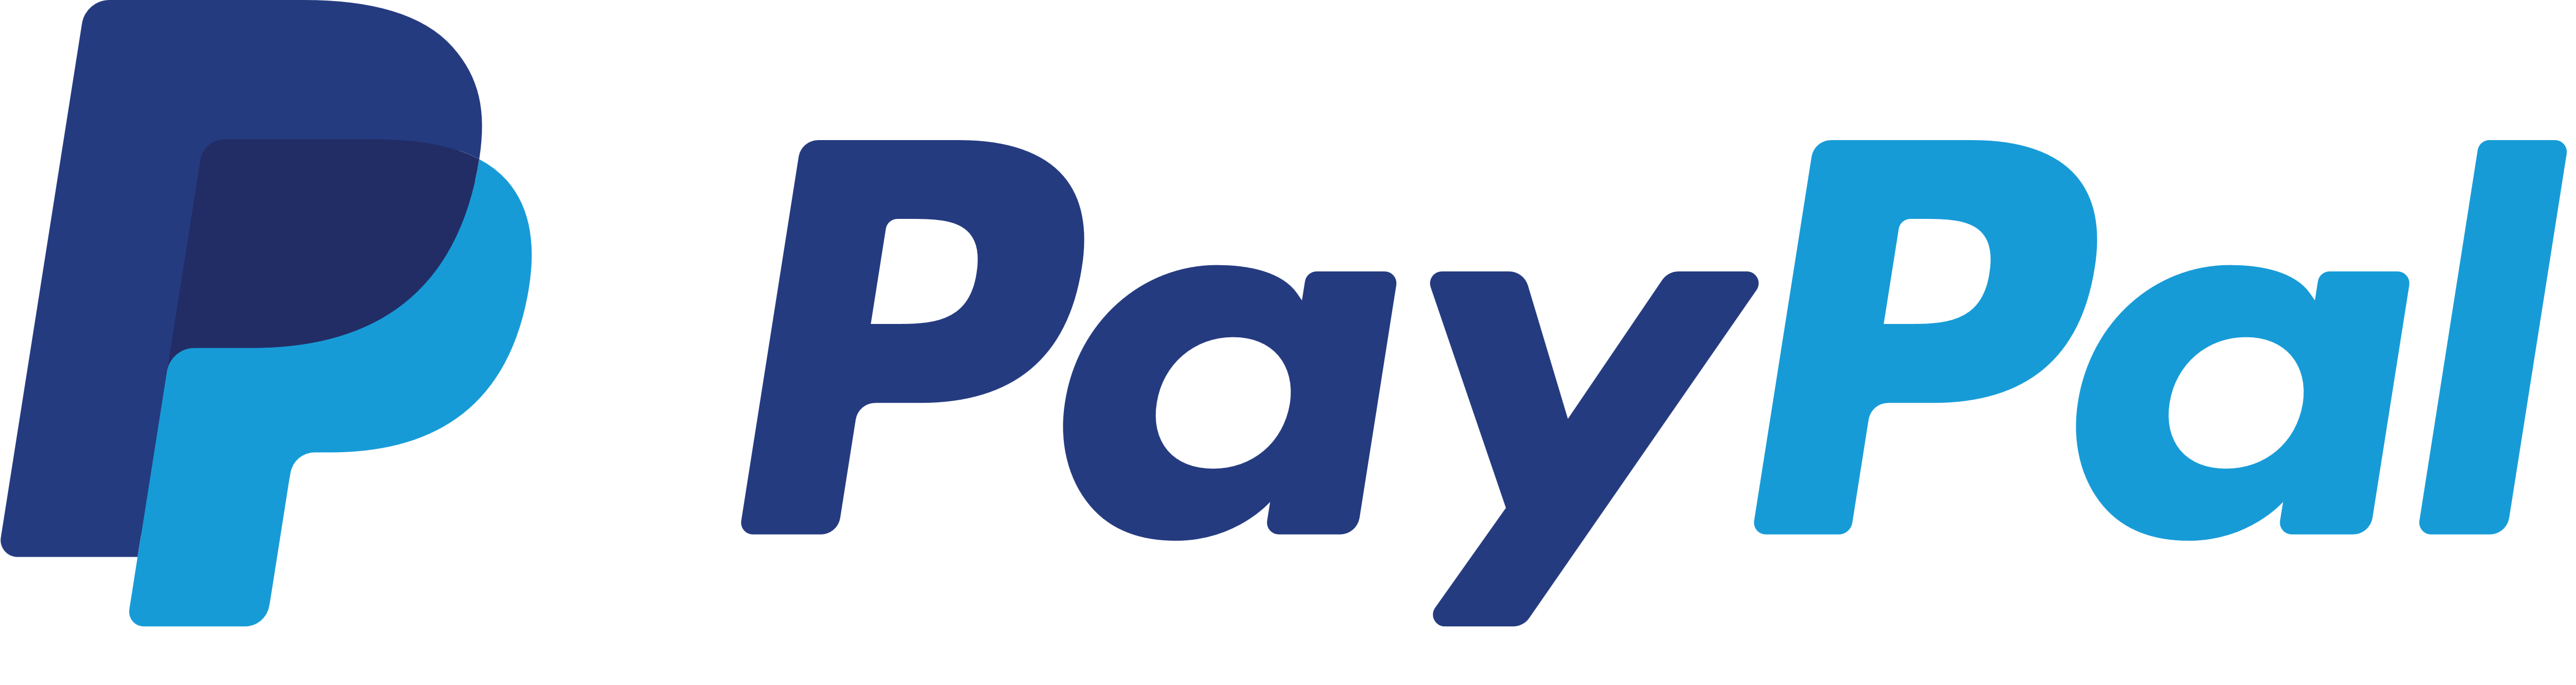 https://www.hostnet.com.br/wp-content/uploads/2021/09/PayPal_logo_logotype_emblem.png